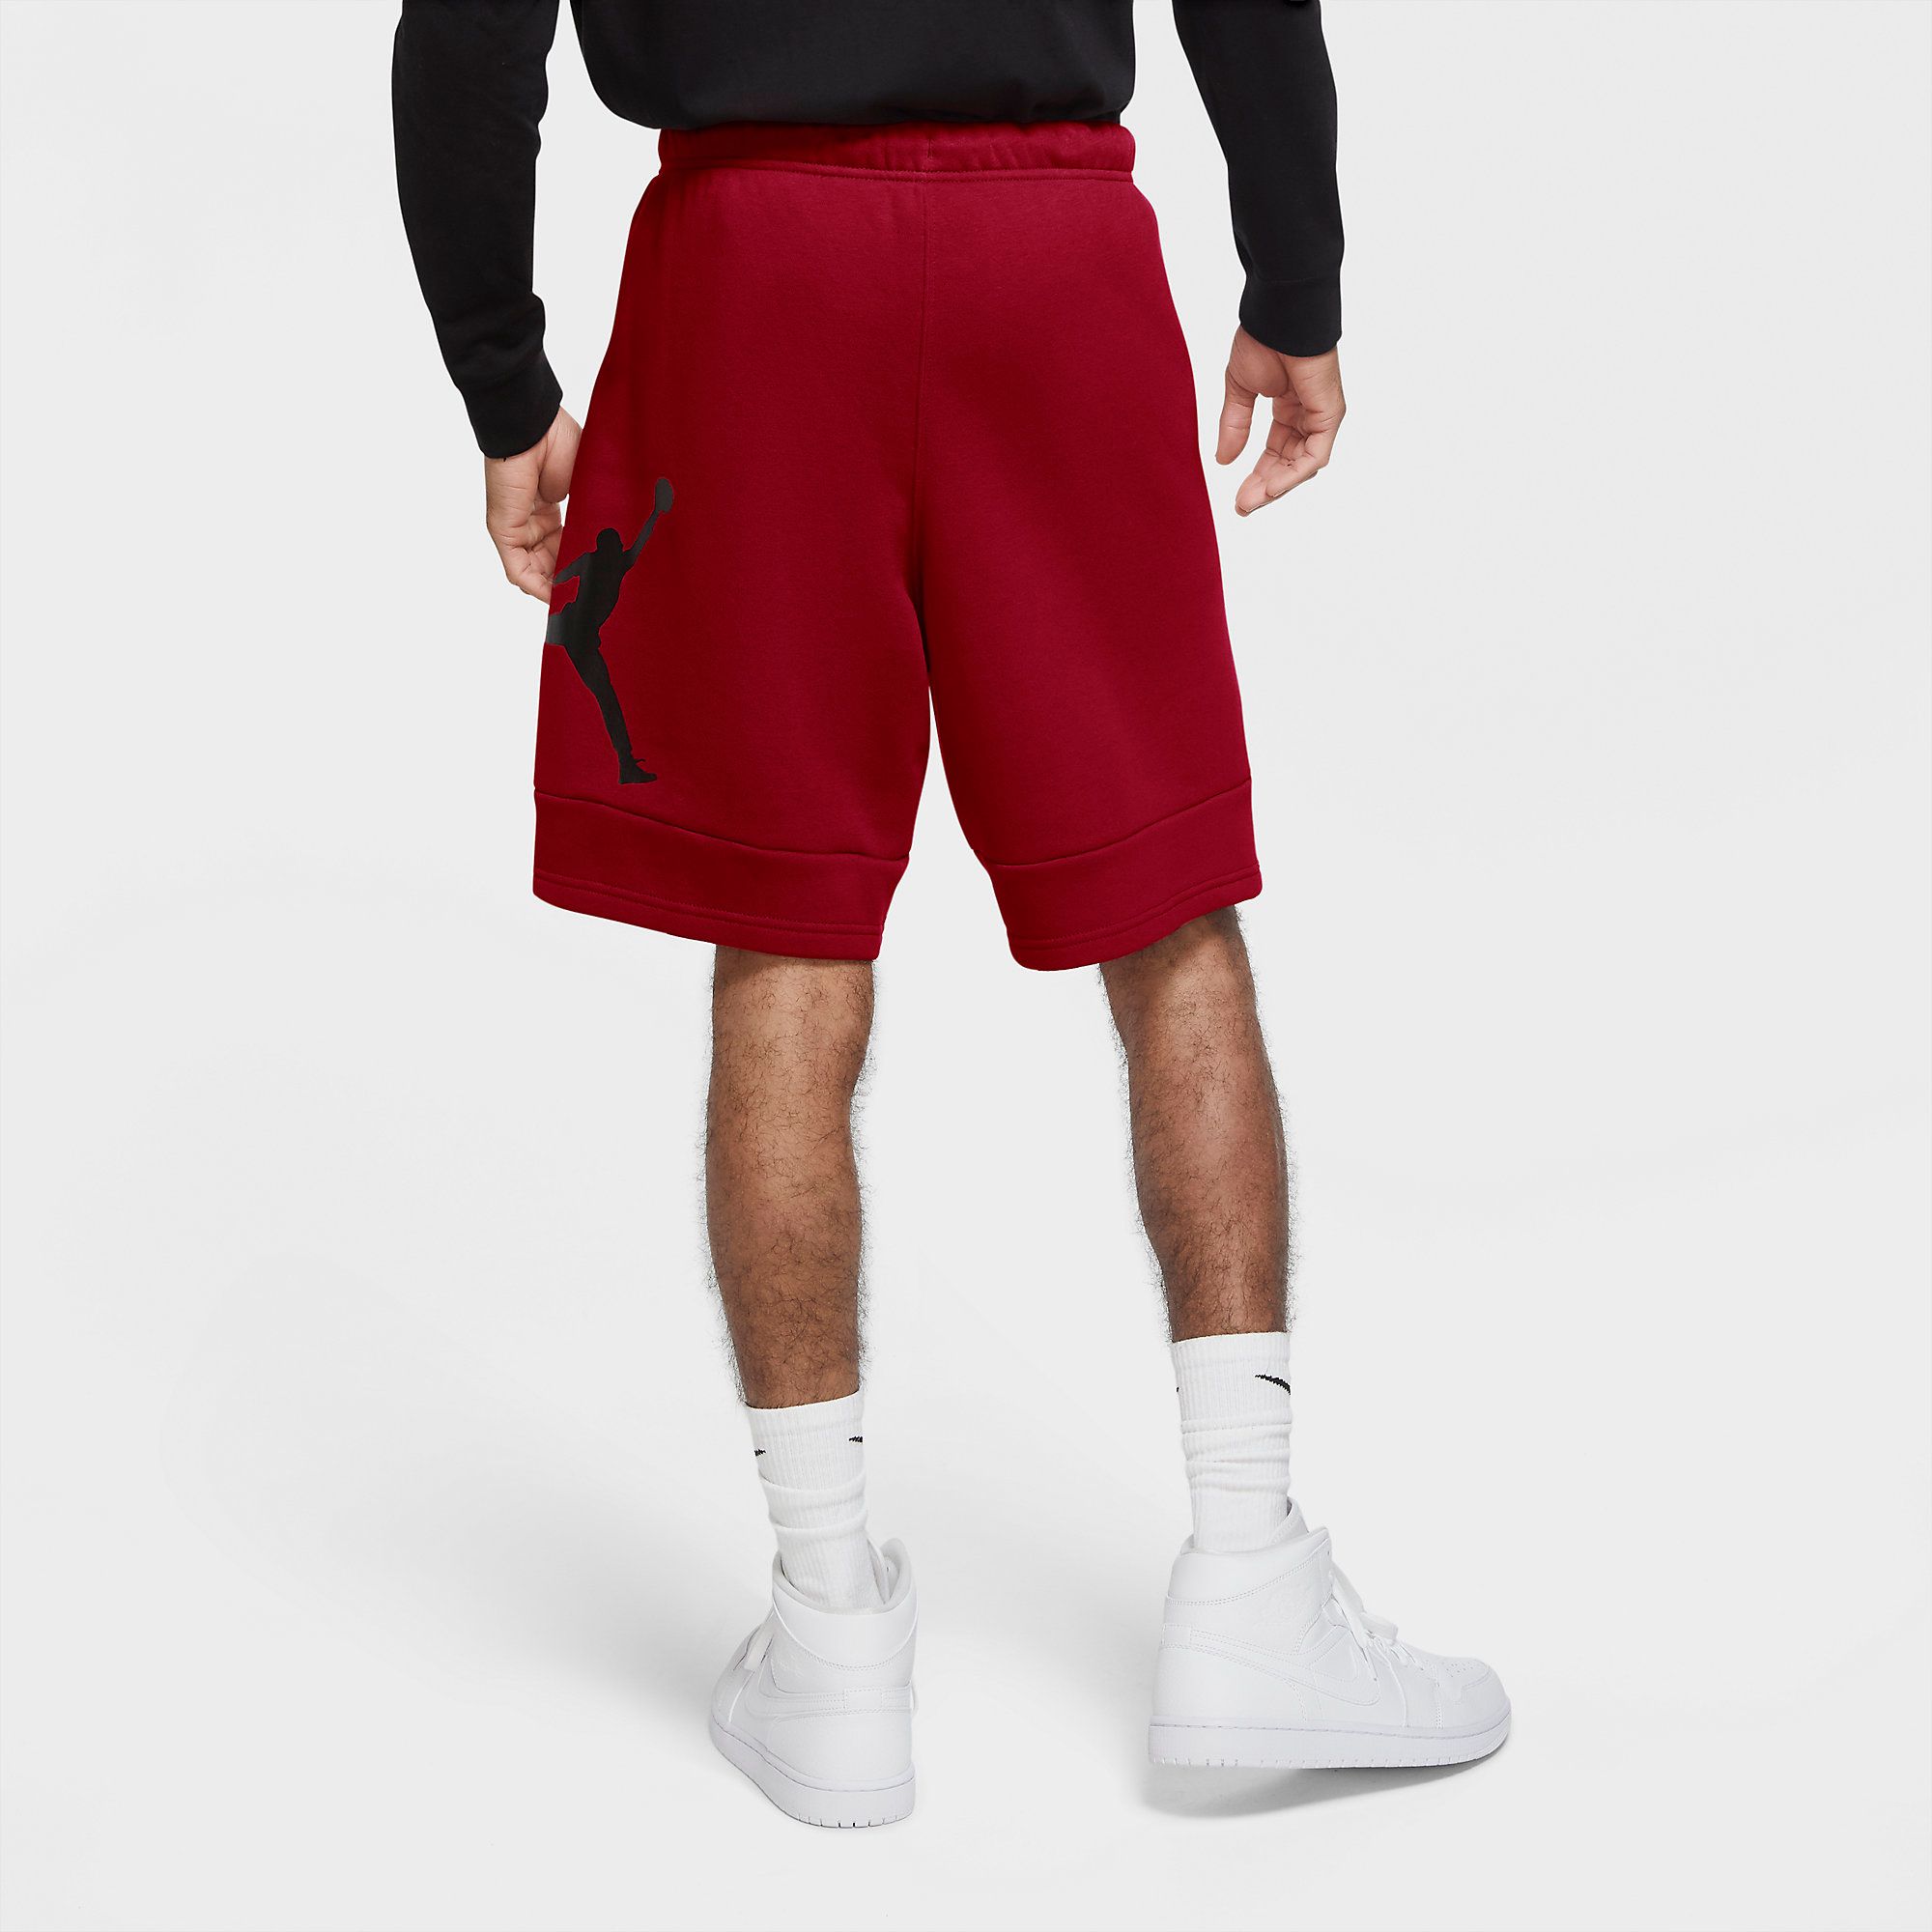  Jordan Jumpman Air Fleece Shorts - Gym Red 